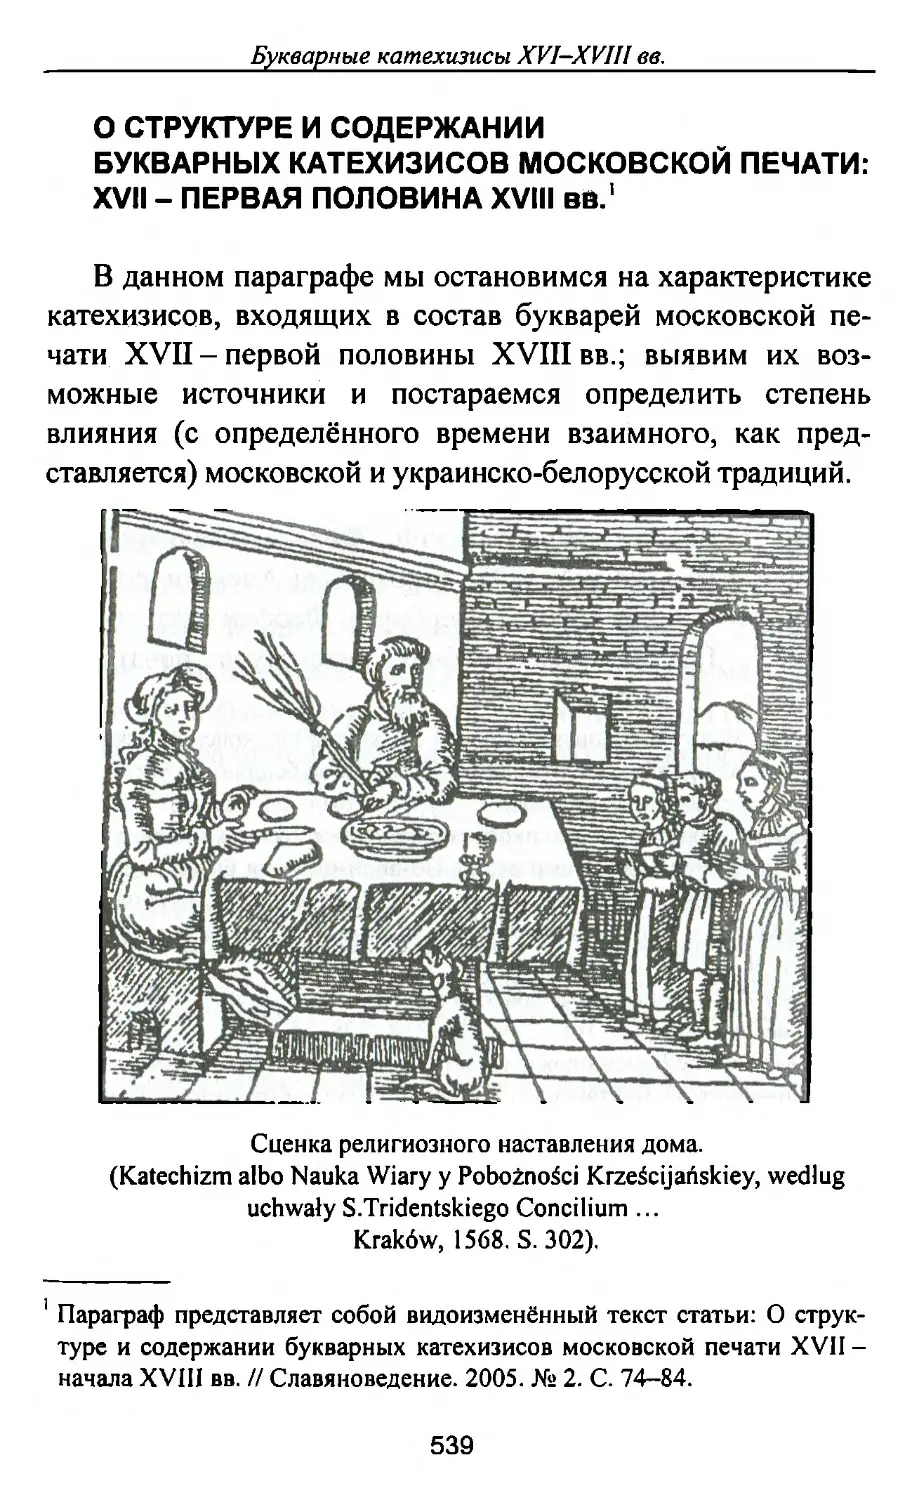 О структуре и содержании букварных катехизисов московской печати: XVII – первая половина XVIII вв.